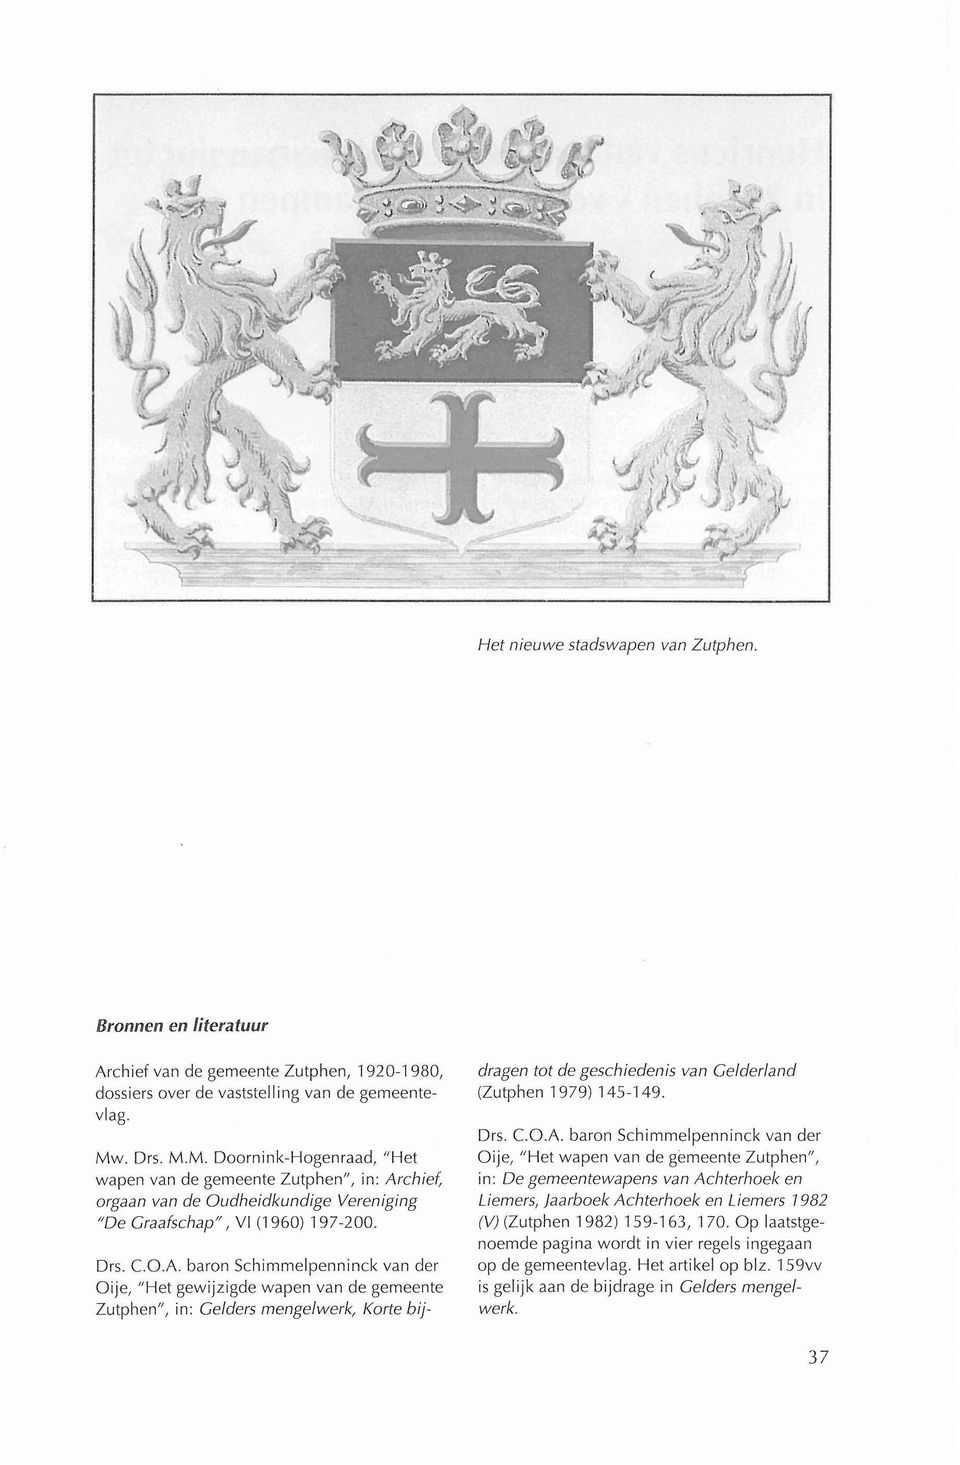 chief, orgaan van de Oudheidkundige Vereniging "De Graafschap", VI (1 960) 197-200. Drs. C.O.A.